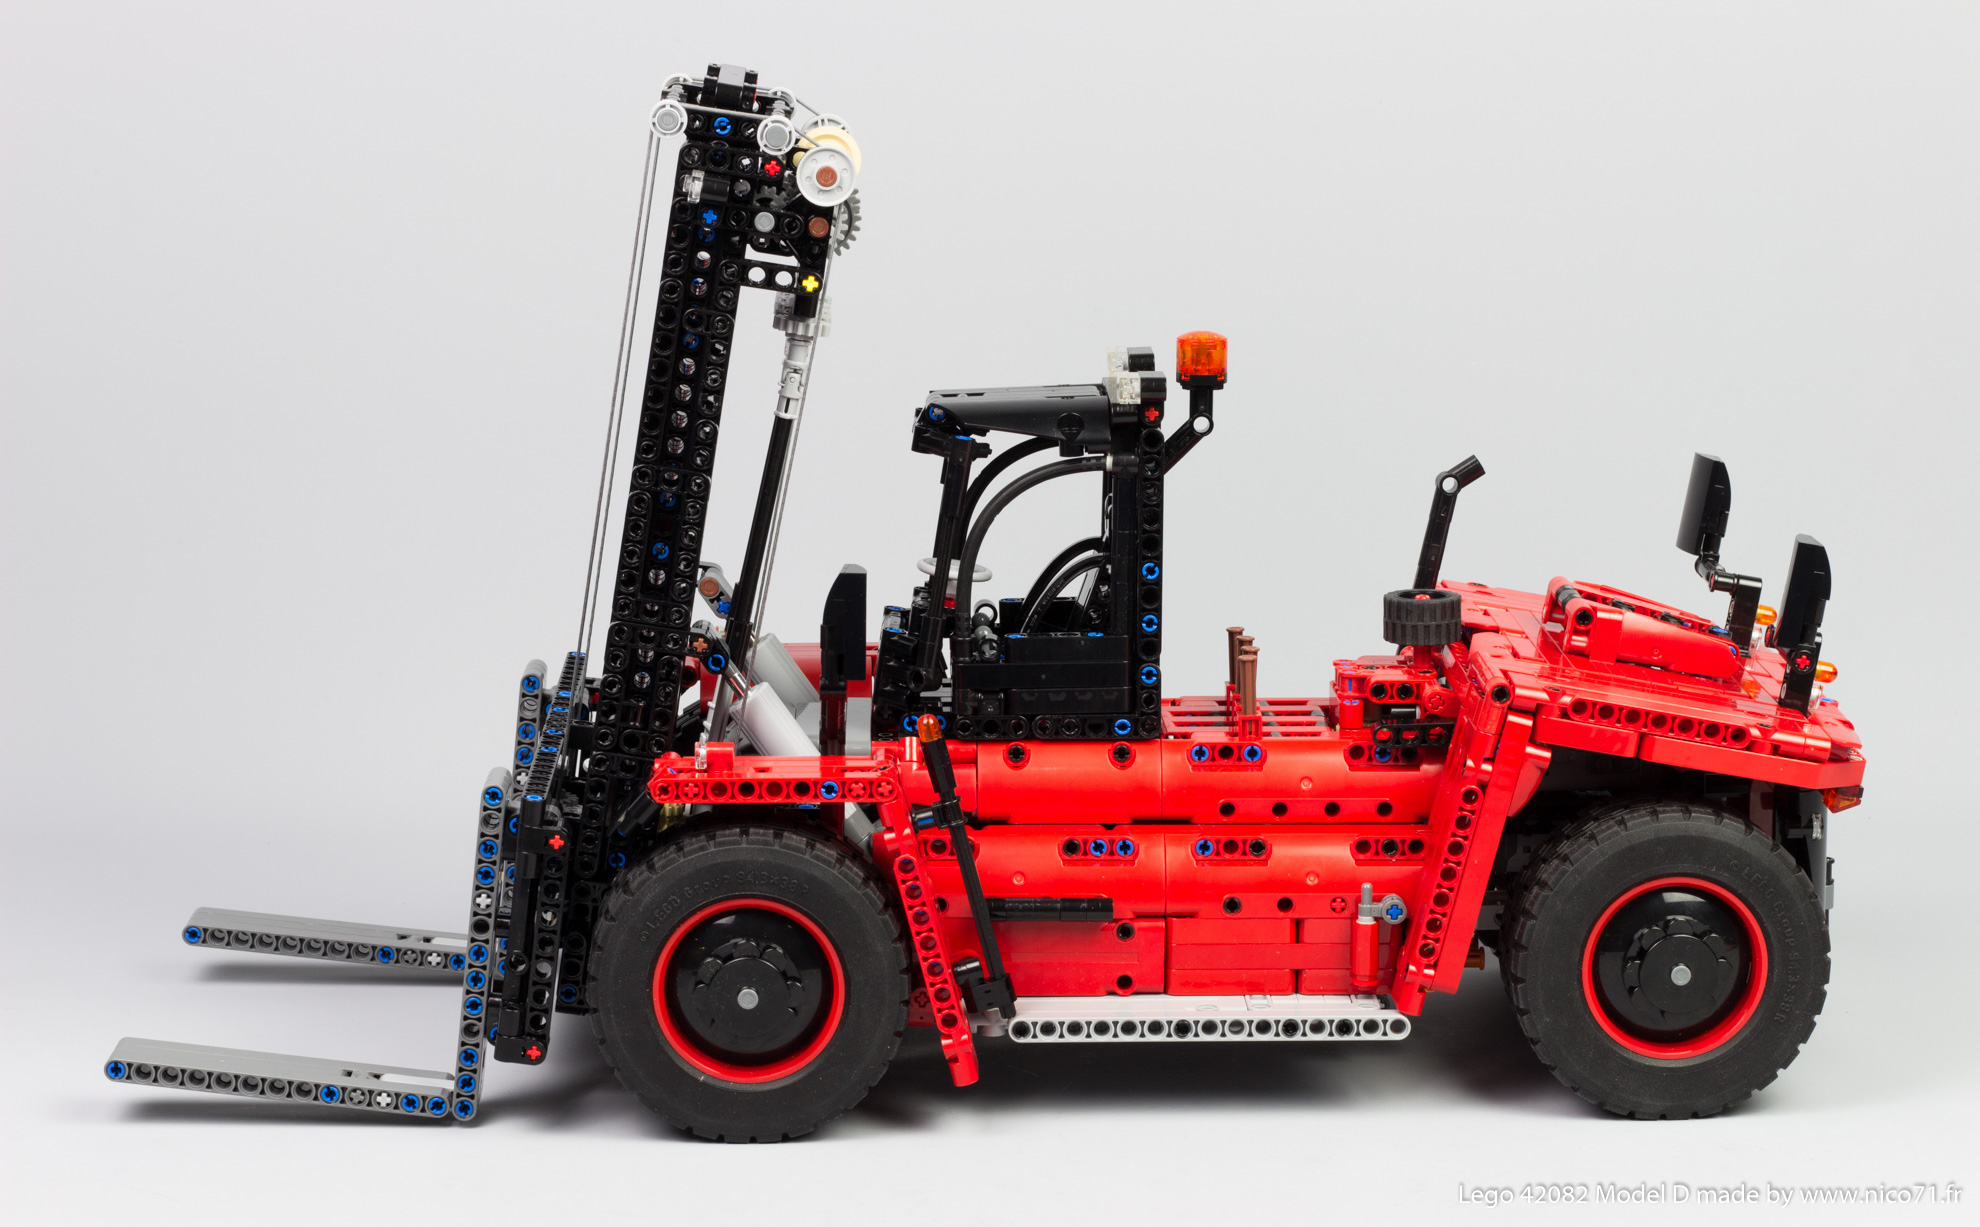 lego-42082-model-d-heavy-forklift-2.jpg